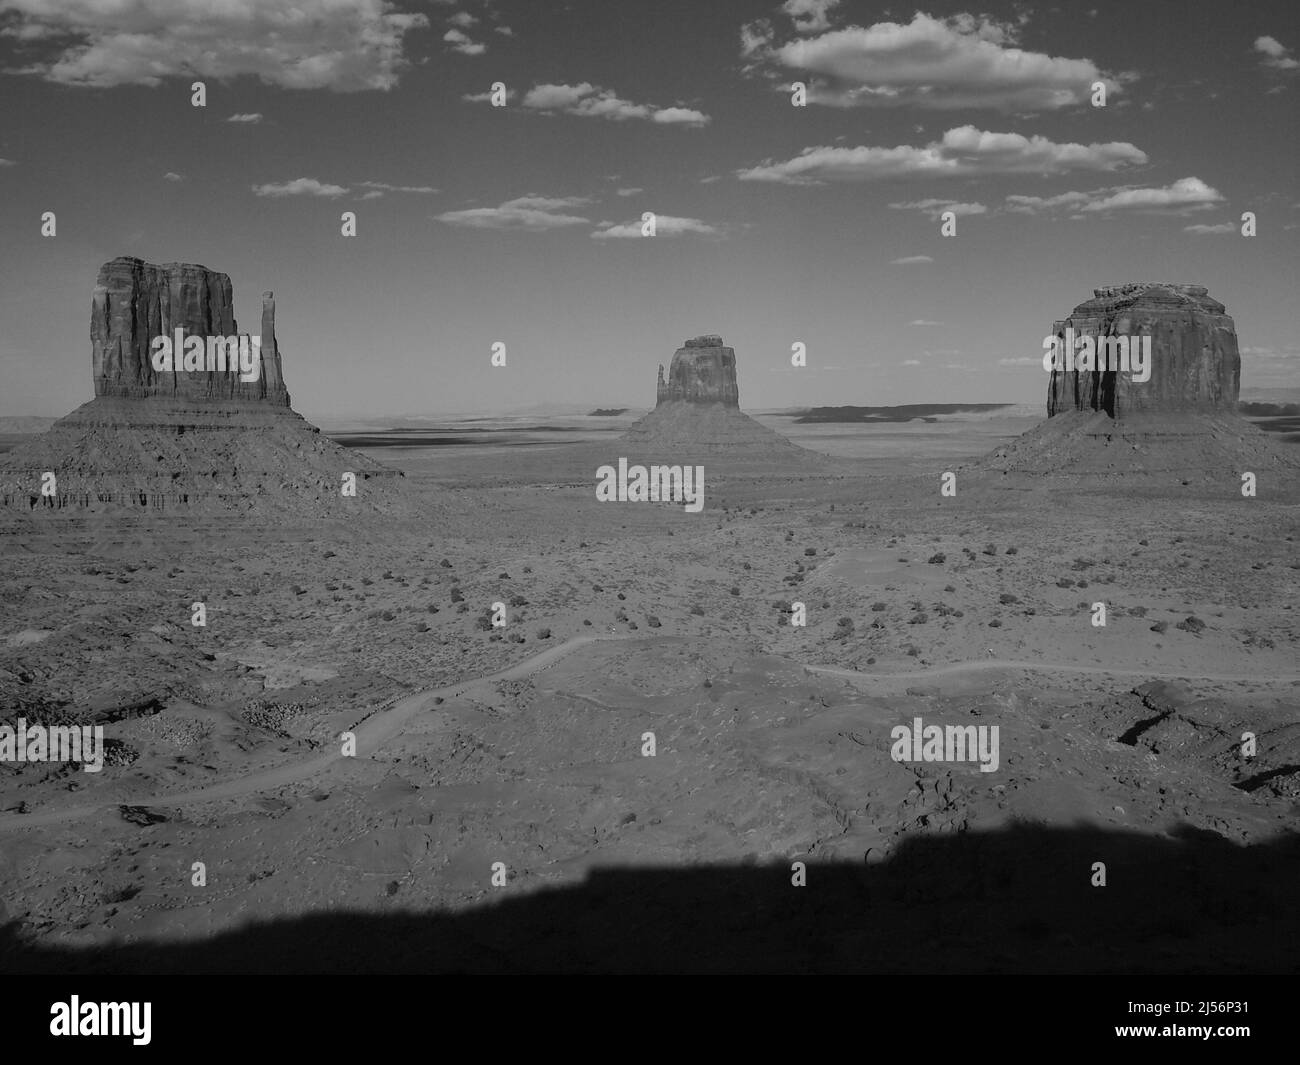 Monument Valley, Arizona dans la nation indienne Navajo près de l'angle nord-est de l'Utah, frontière de l'Arizona. Oljato - Monument Valley Banque D'Images